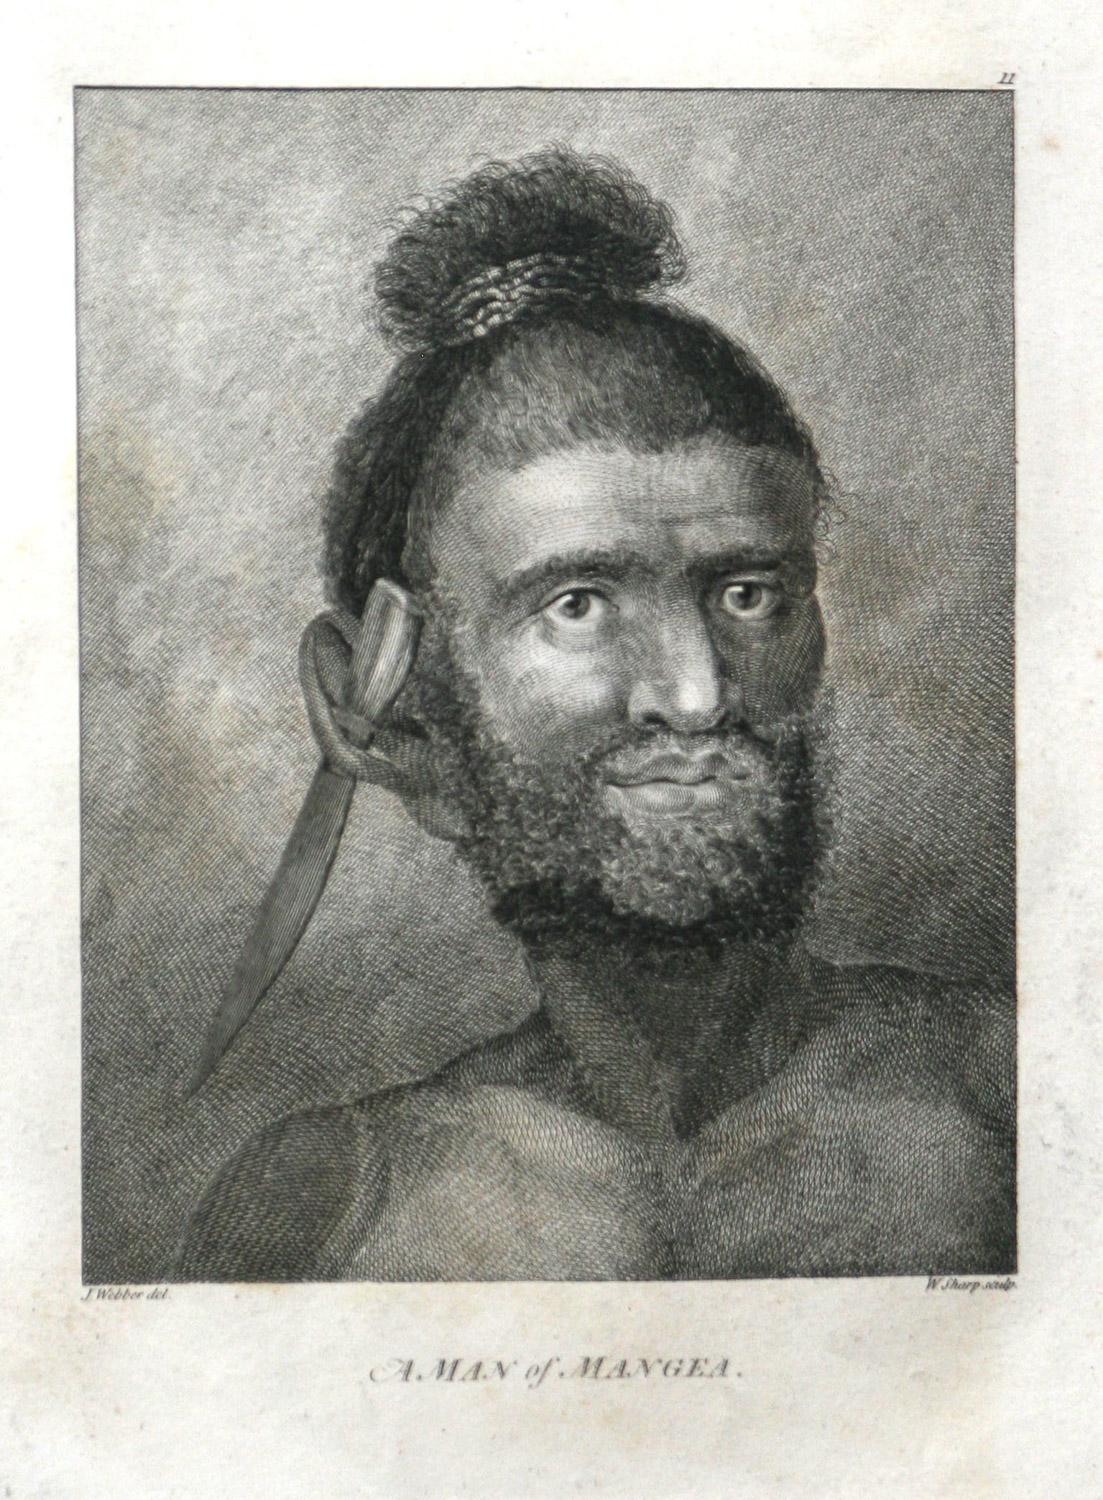 Un homme de Mangea  est tiré de la première édition de l'Atlas de 1784 accompagnant le CAP. James Cook and King ; troisième et dernier voyage du capitaine James Cook. John Webber (1752-1793) était l'artiste officiel du troisième voyage du capitaine